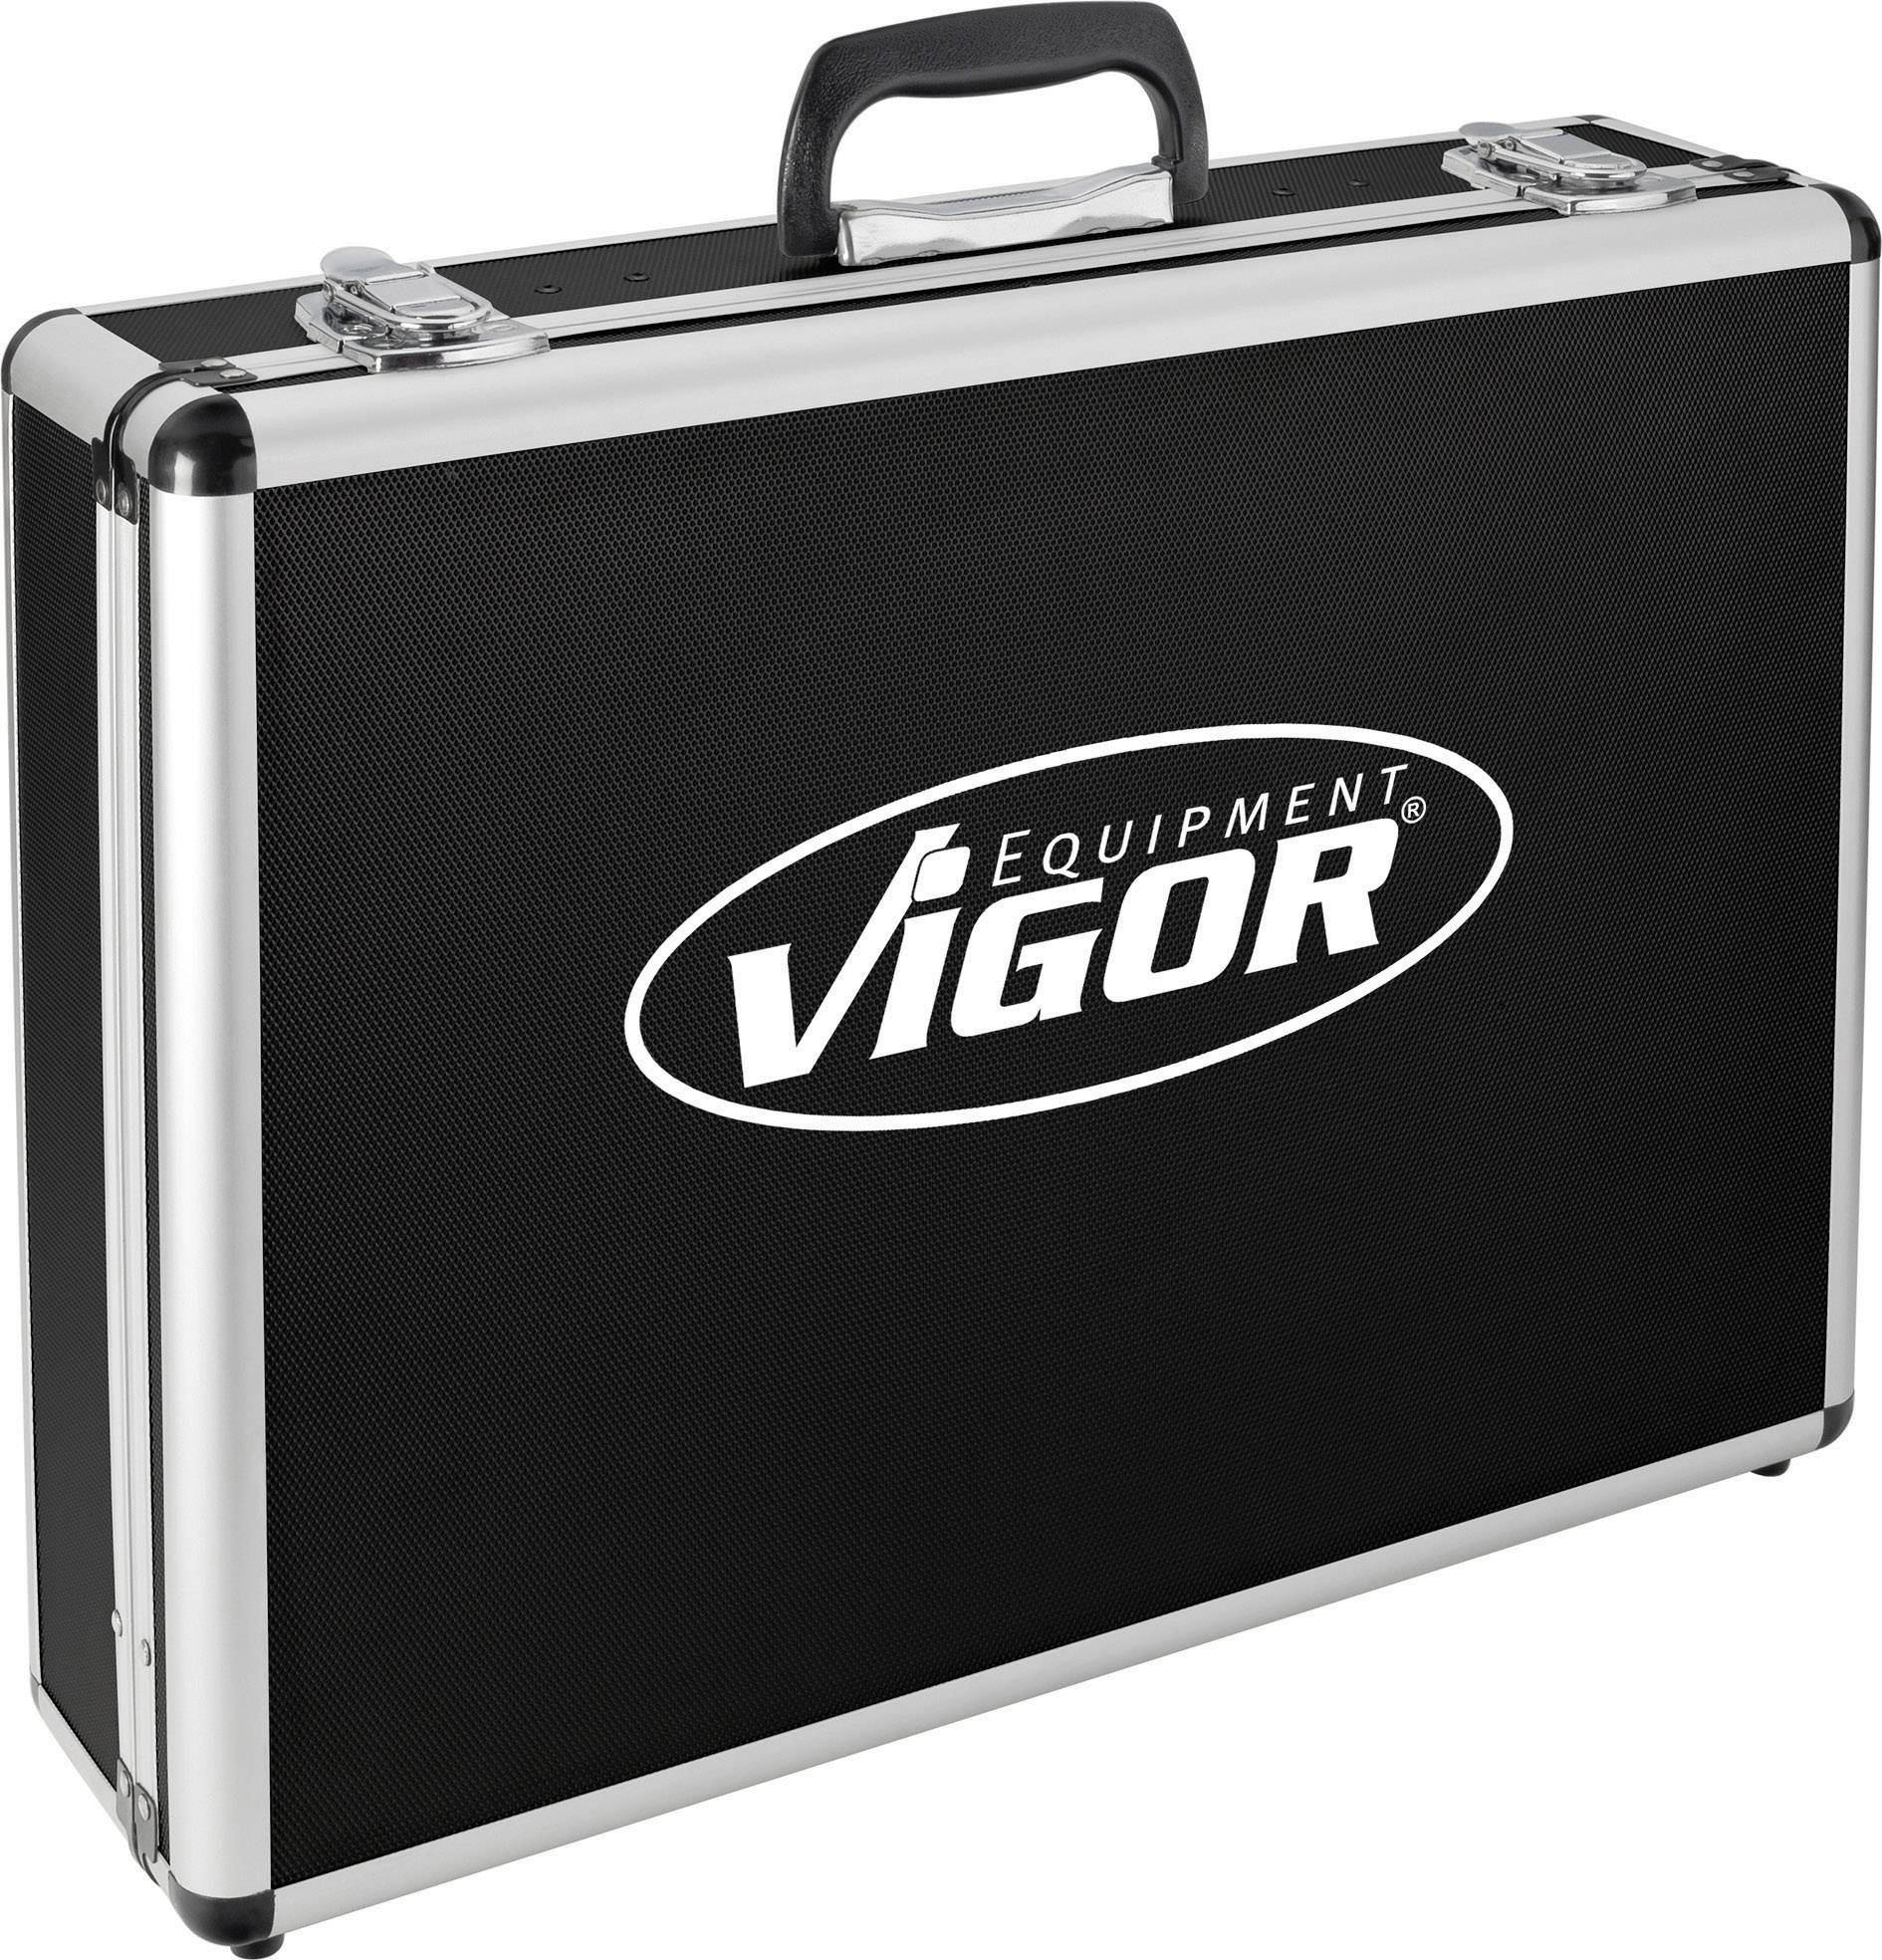 VIGOR Werkzeugkoffer V2400 Abmessungen: (B x H x T) 498 x 150 x 378 mm (V2400)